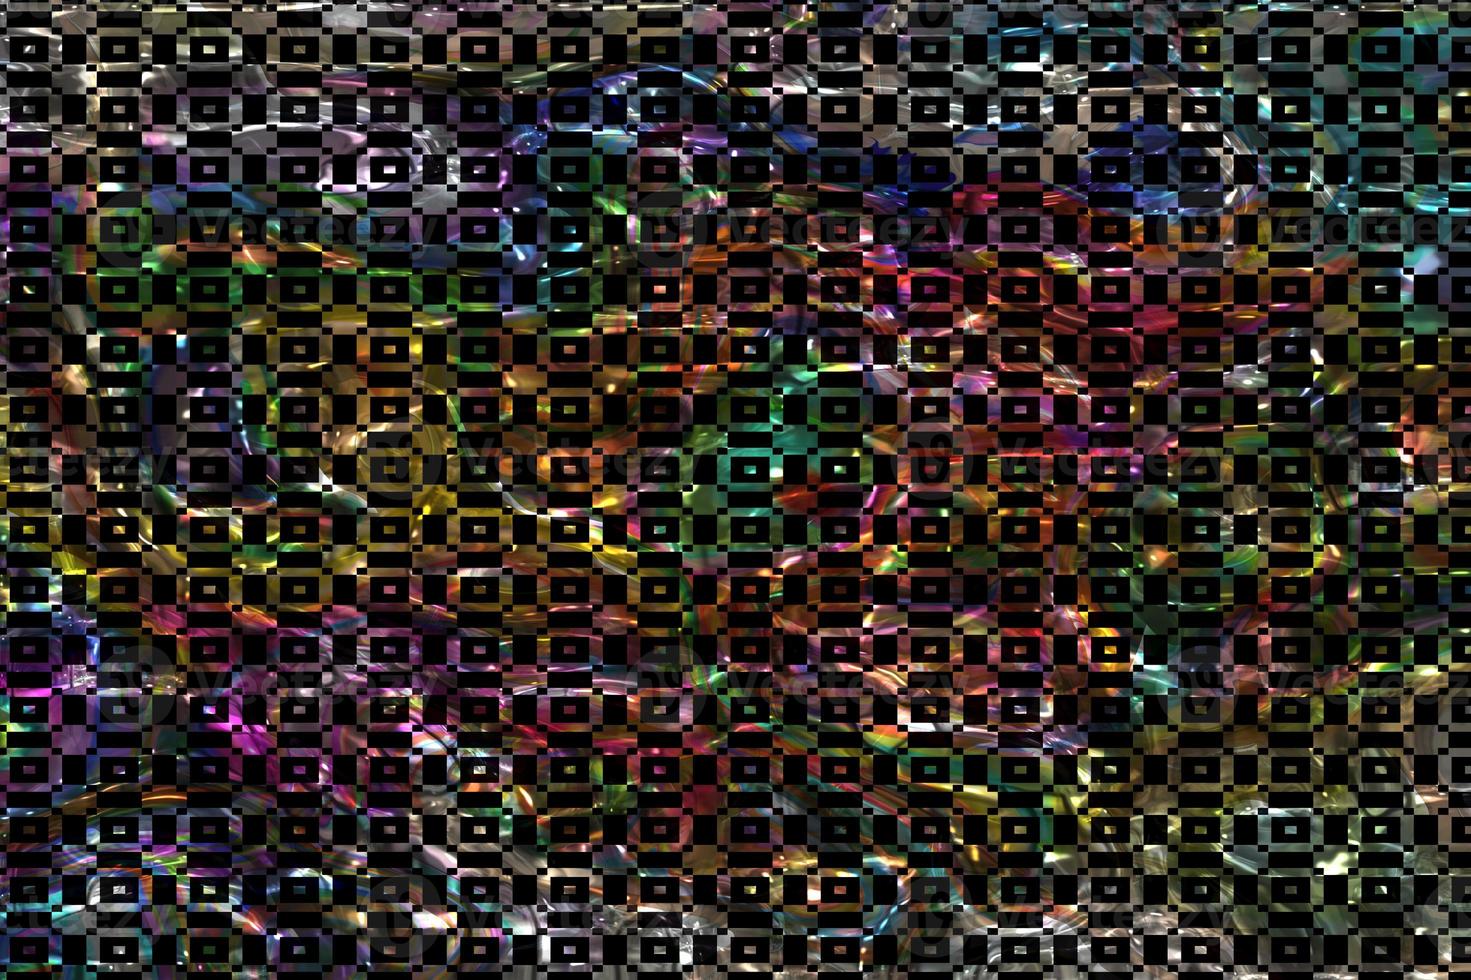 abstrakter geometrischer Hintergrund, buntes geometrisches Oberflächendesign, holografischer Texturhintergrund, mehrfarbige Leoparden-Gradientenstruktur, abstrakter flüssiger Marmorhintergrund, mehrfarbige glänzende flüssige Textur foto